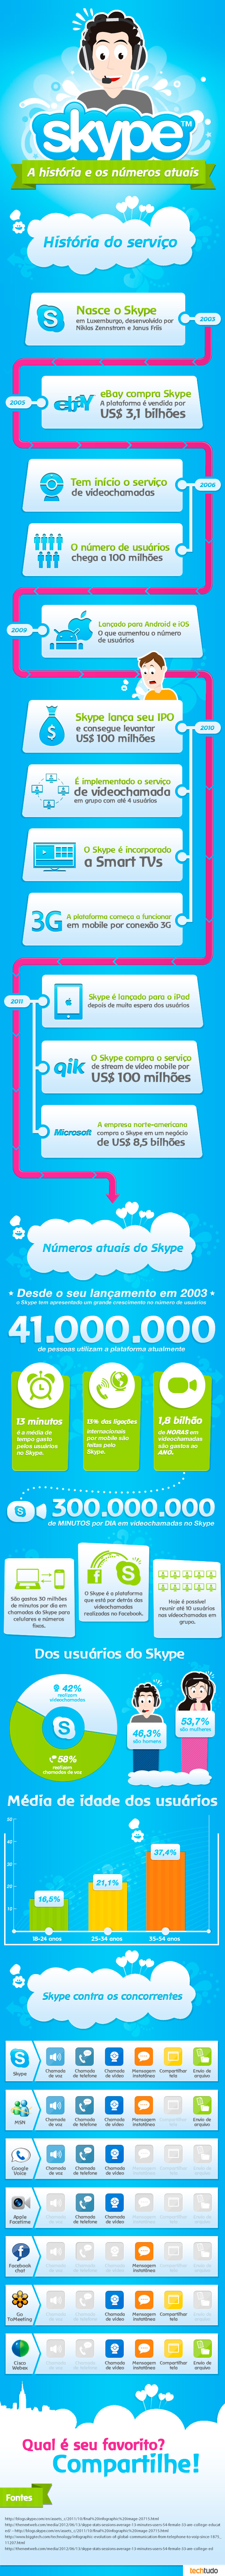 Skype - A Históra e os números atuais